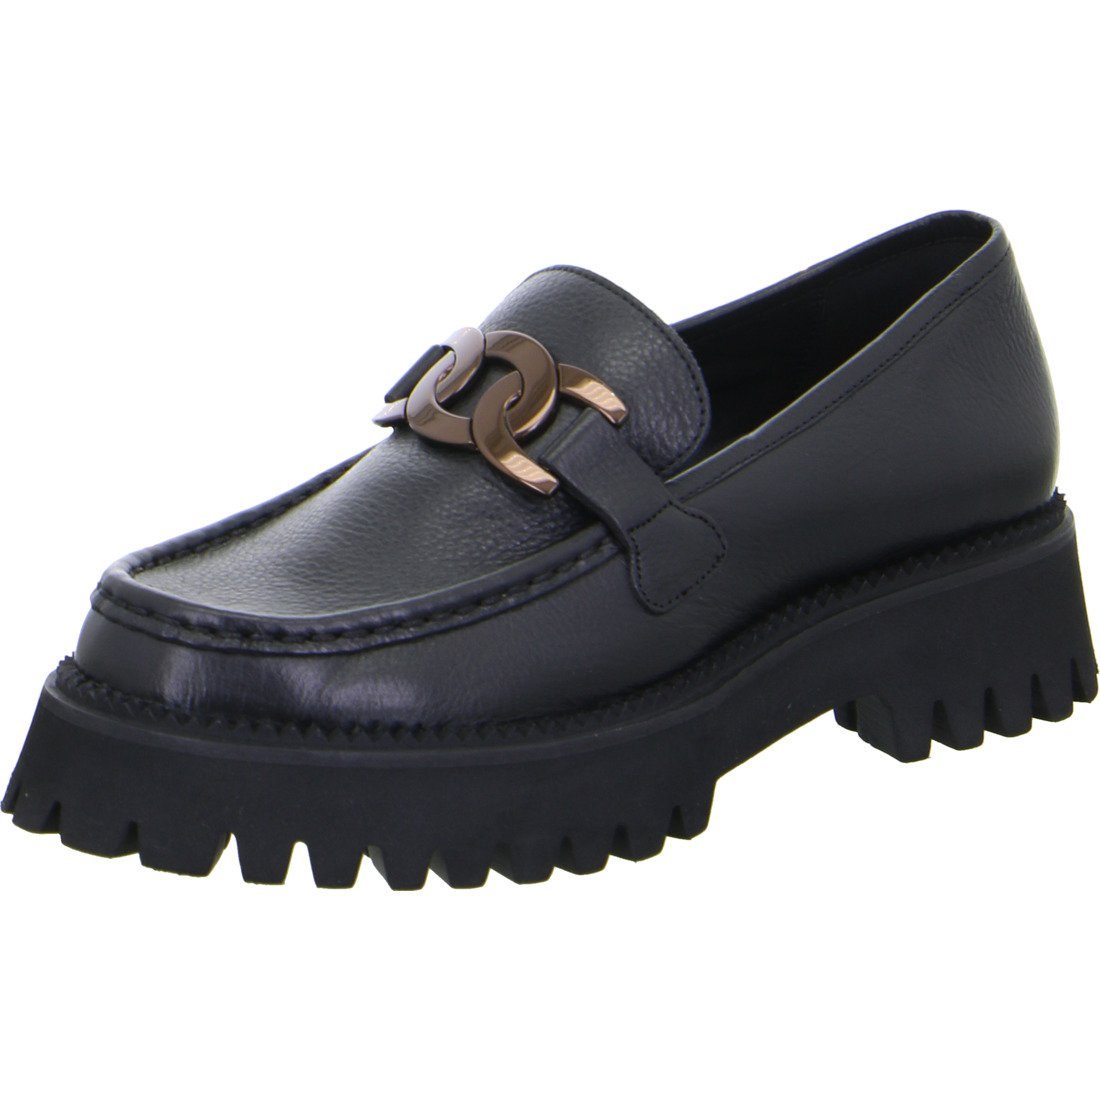 Neuzugänge diese Woche Ara Ara schwarz - Lackleder Slipper Amsterdam Schuhe, Damen Slipper 049705